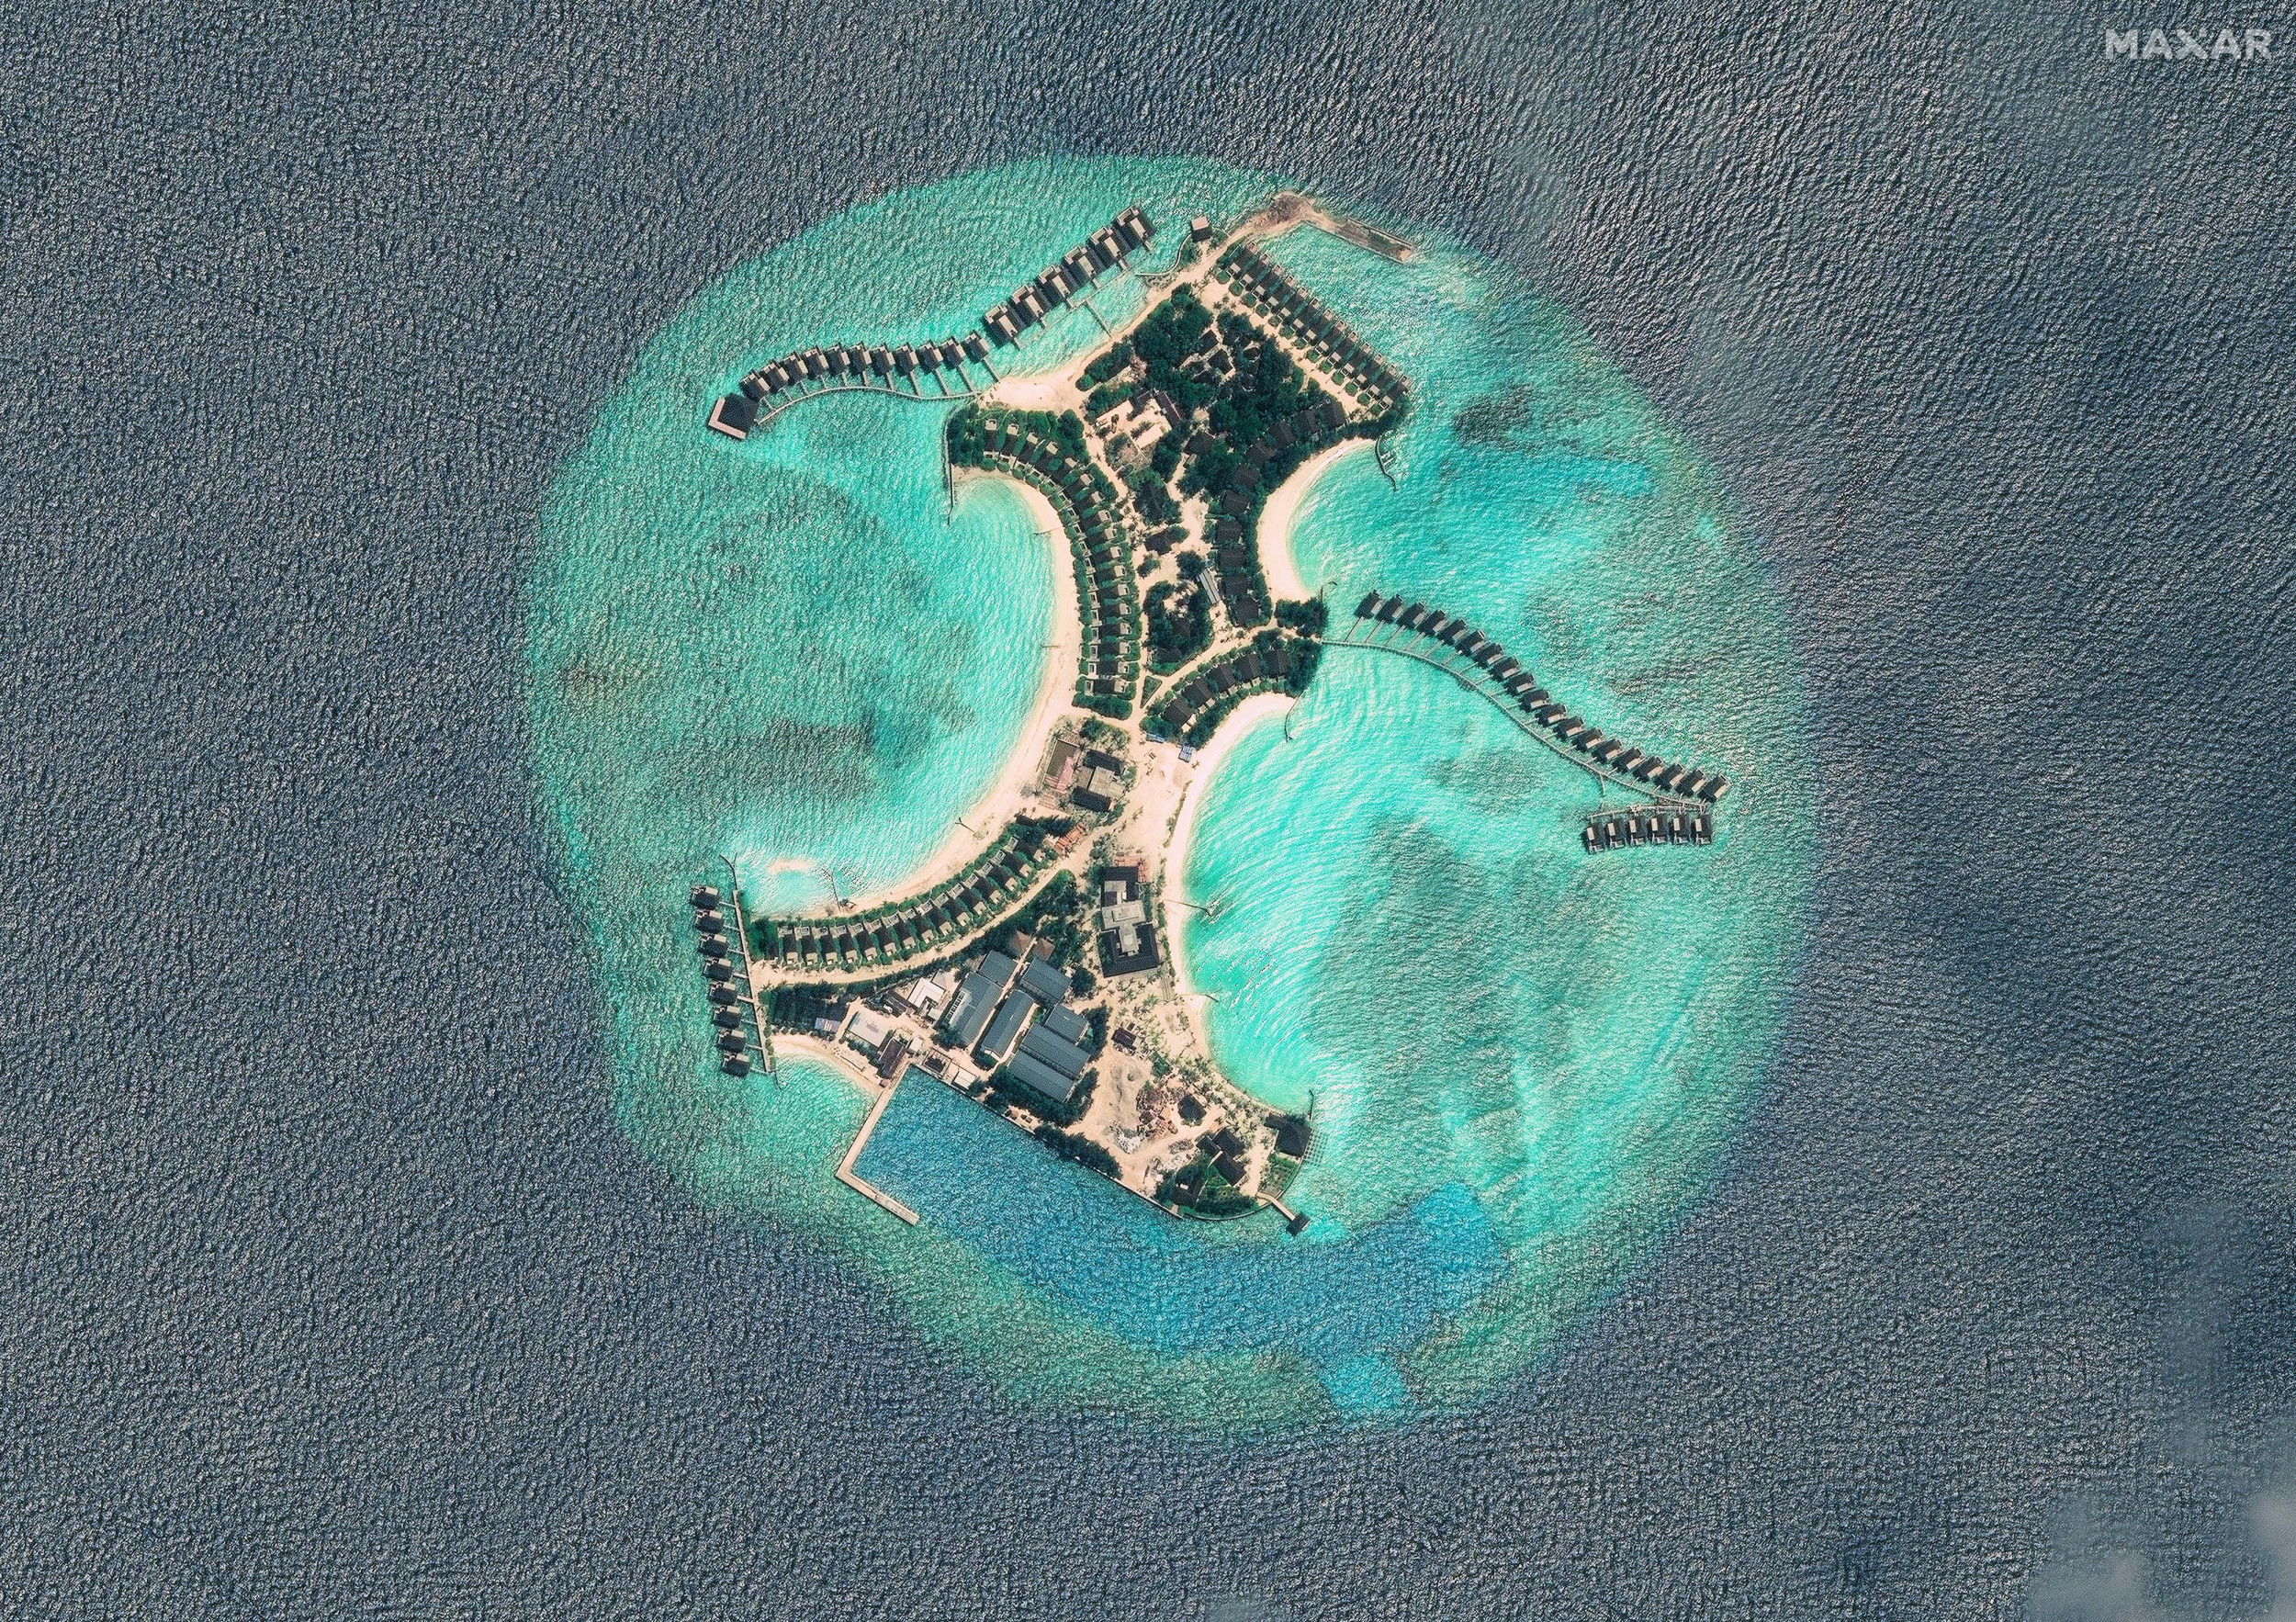 Une image satellite montre la construction de la première ville flottante au monde